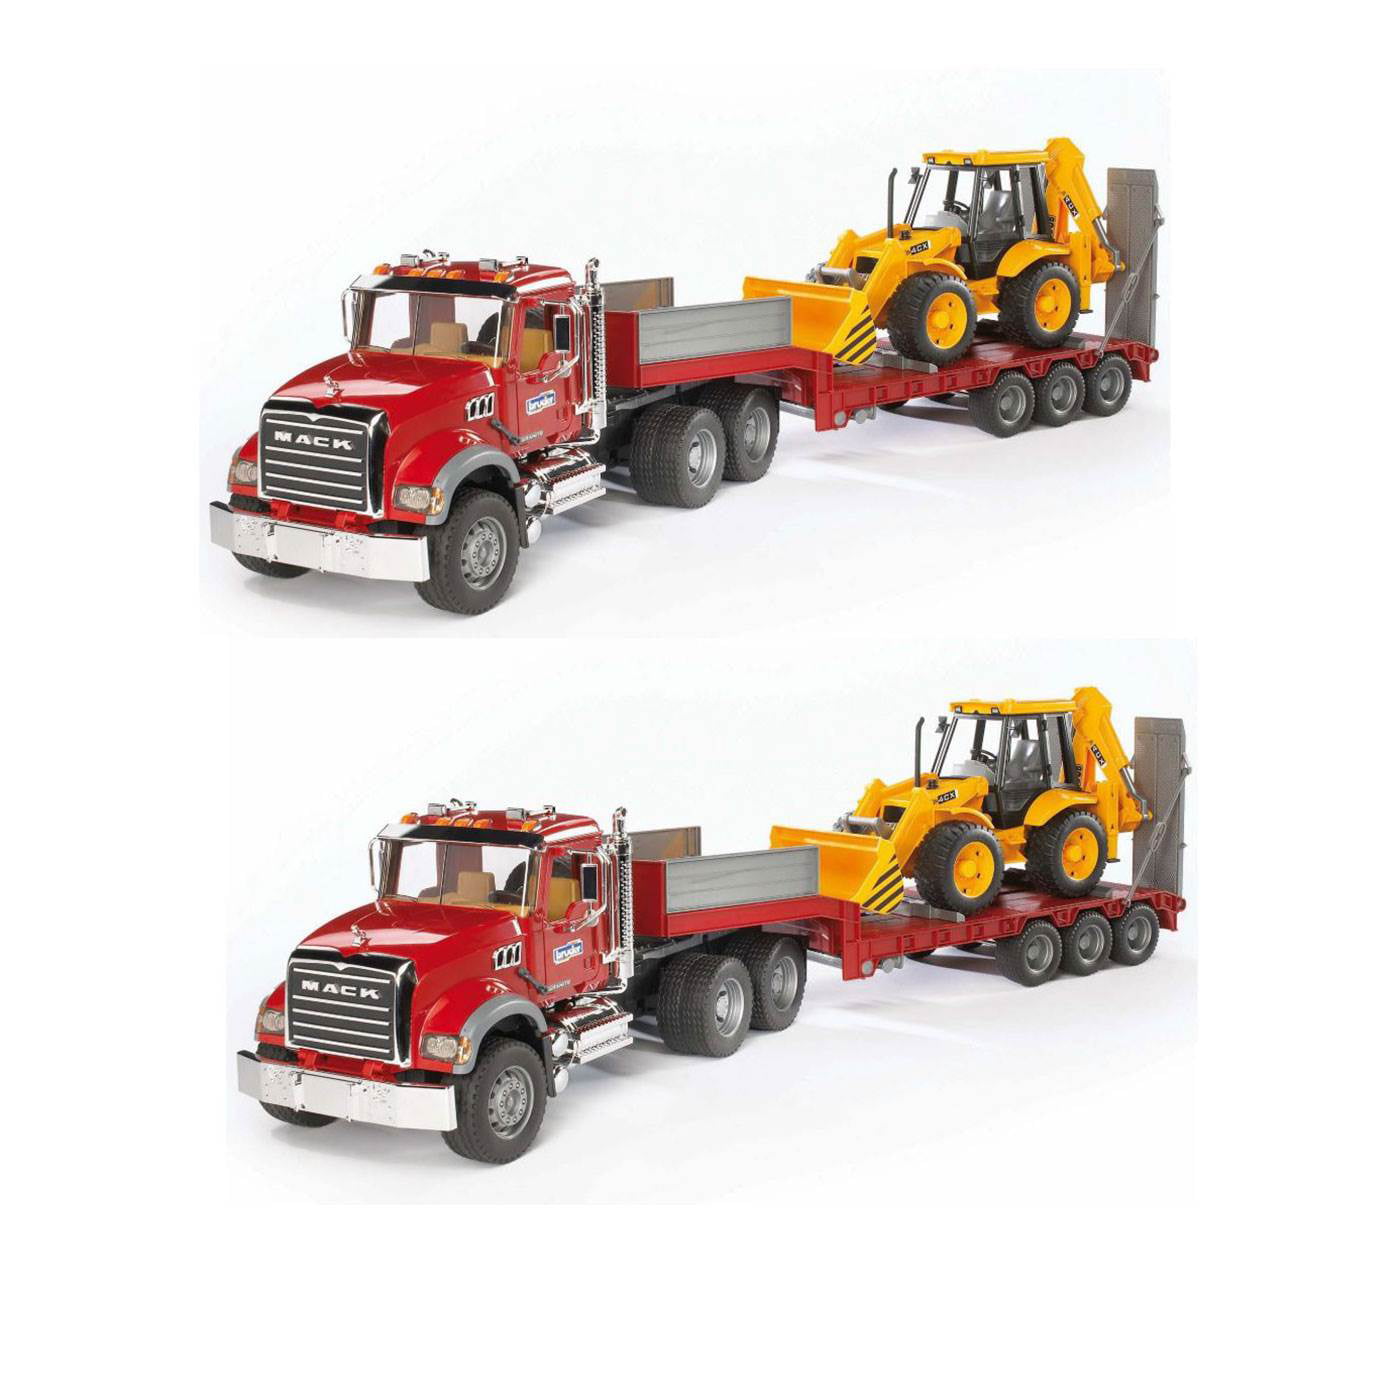 Bruder MAN TGA Low loader Kids Toy Truck w JCB Backhoe 02776 NEW SAME DAY SHIP 